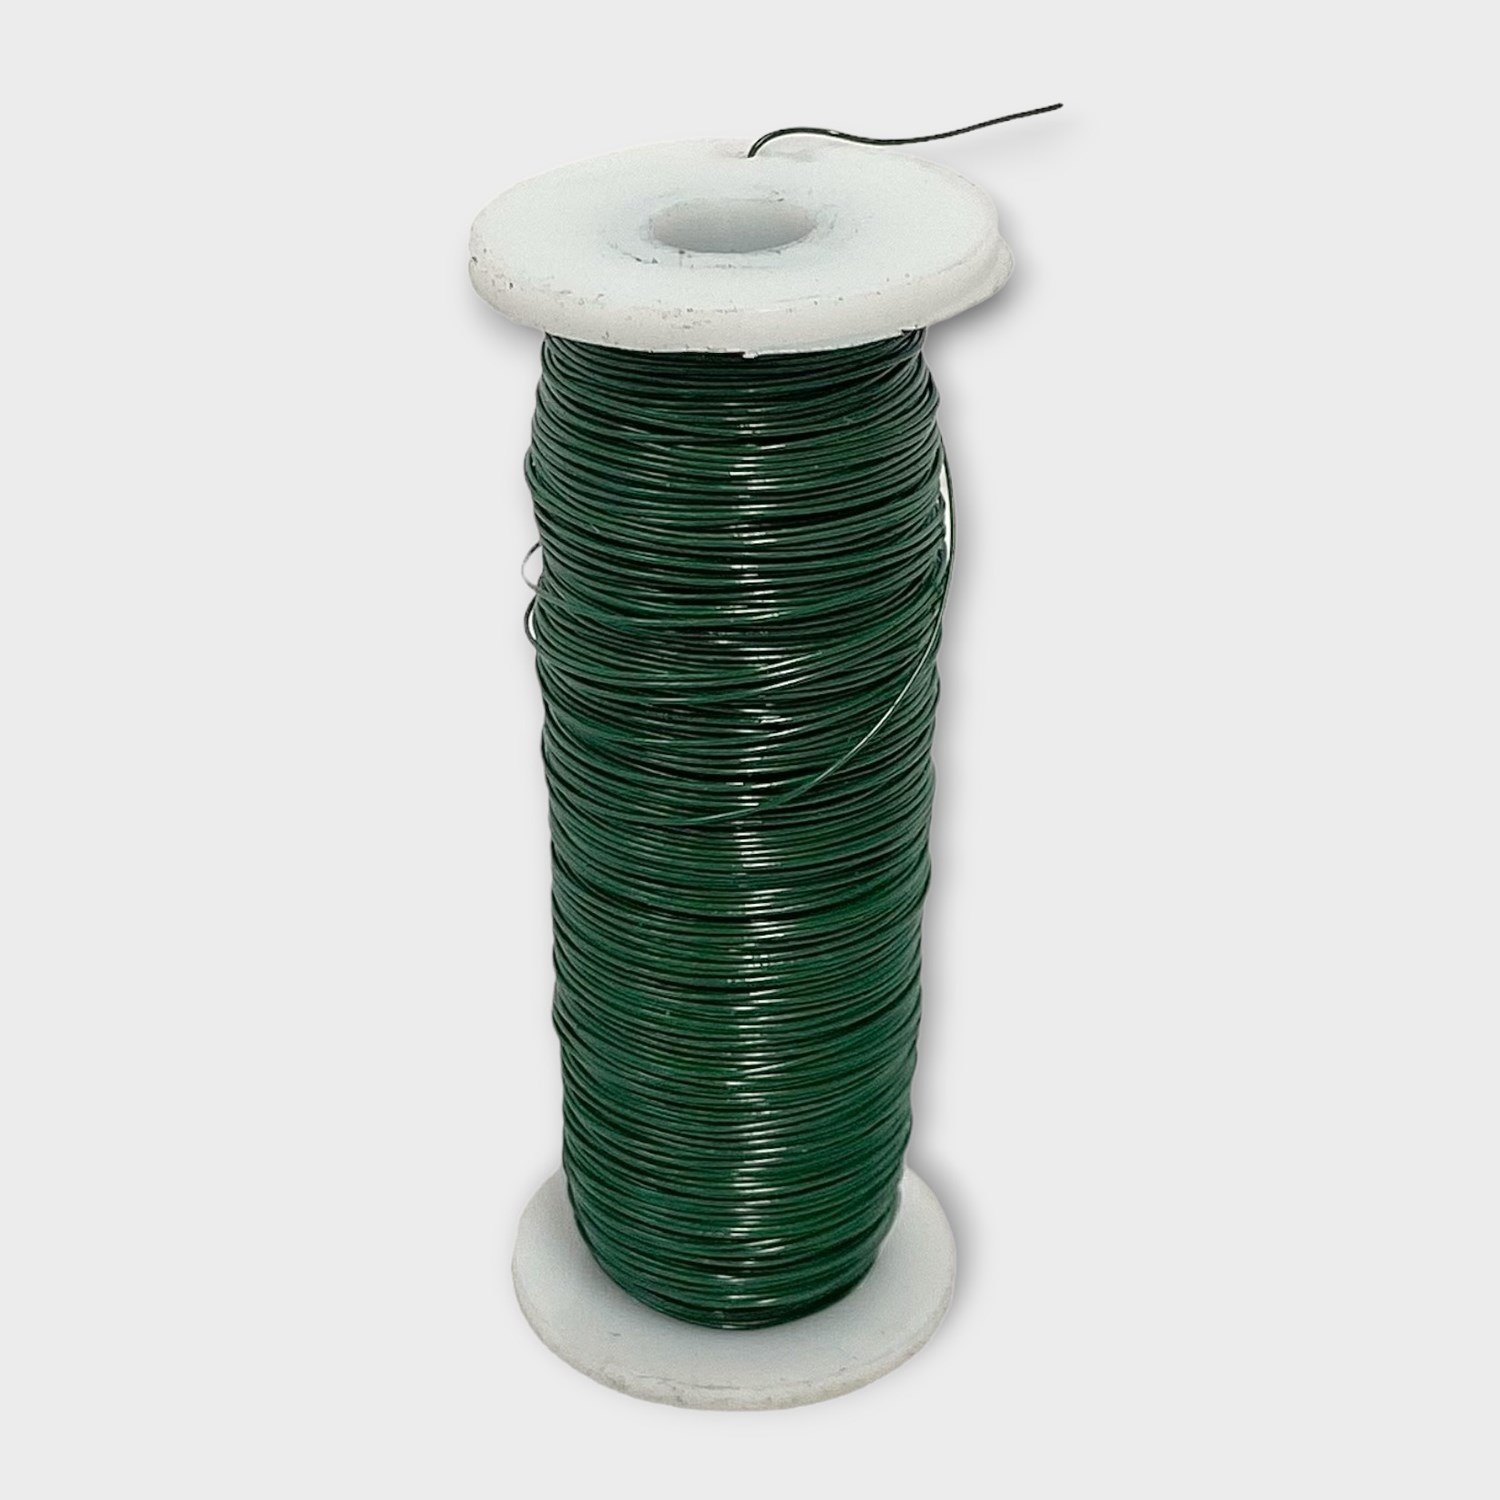 Green Florist Wire Spool - 5lb each - Oregon Wire